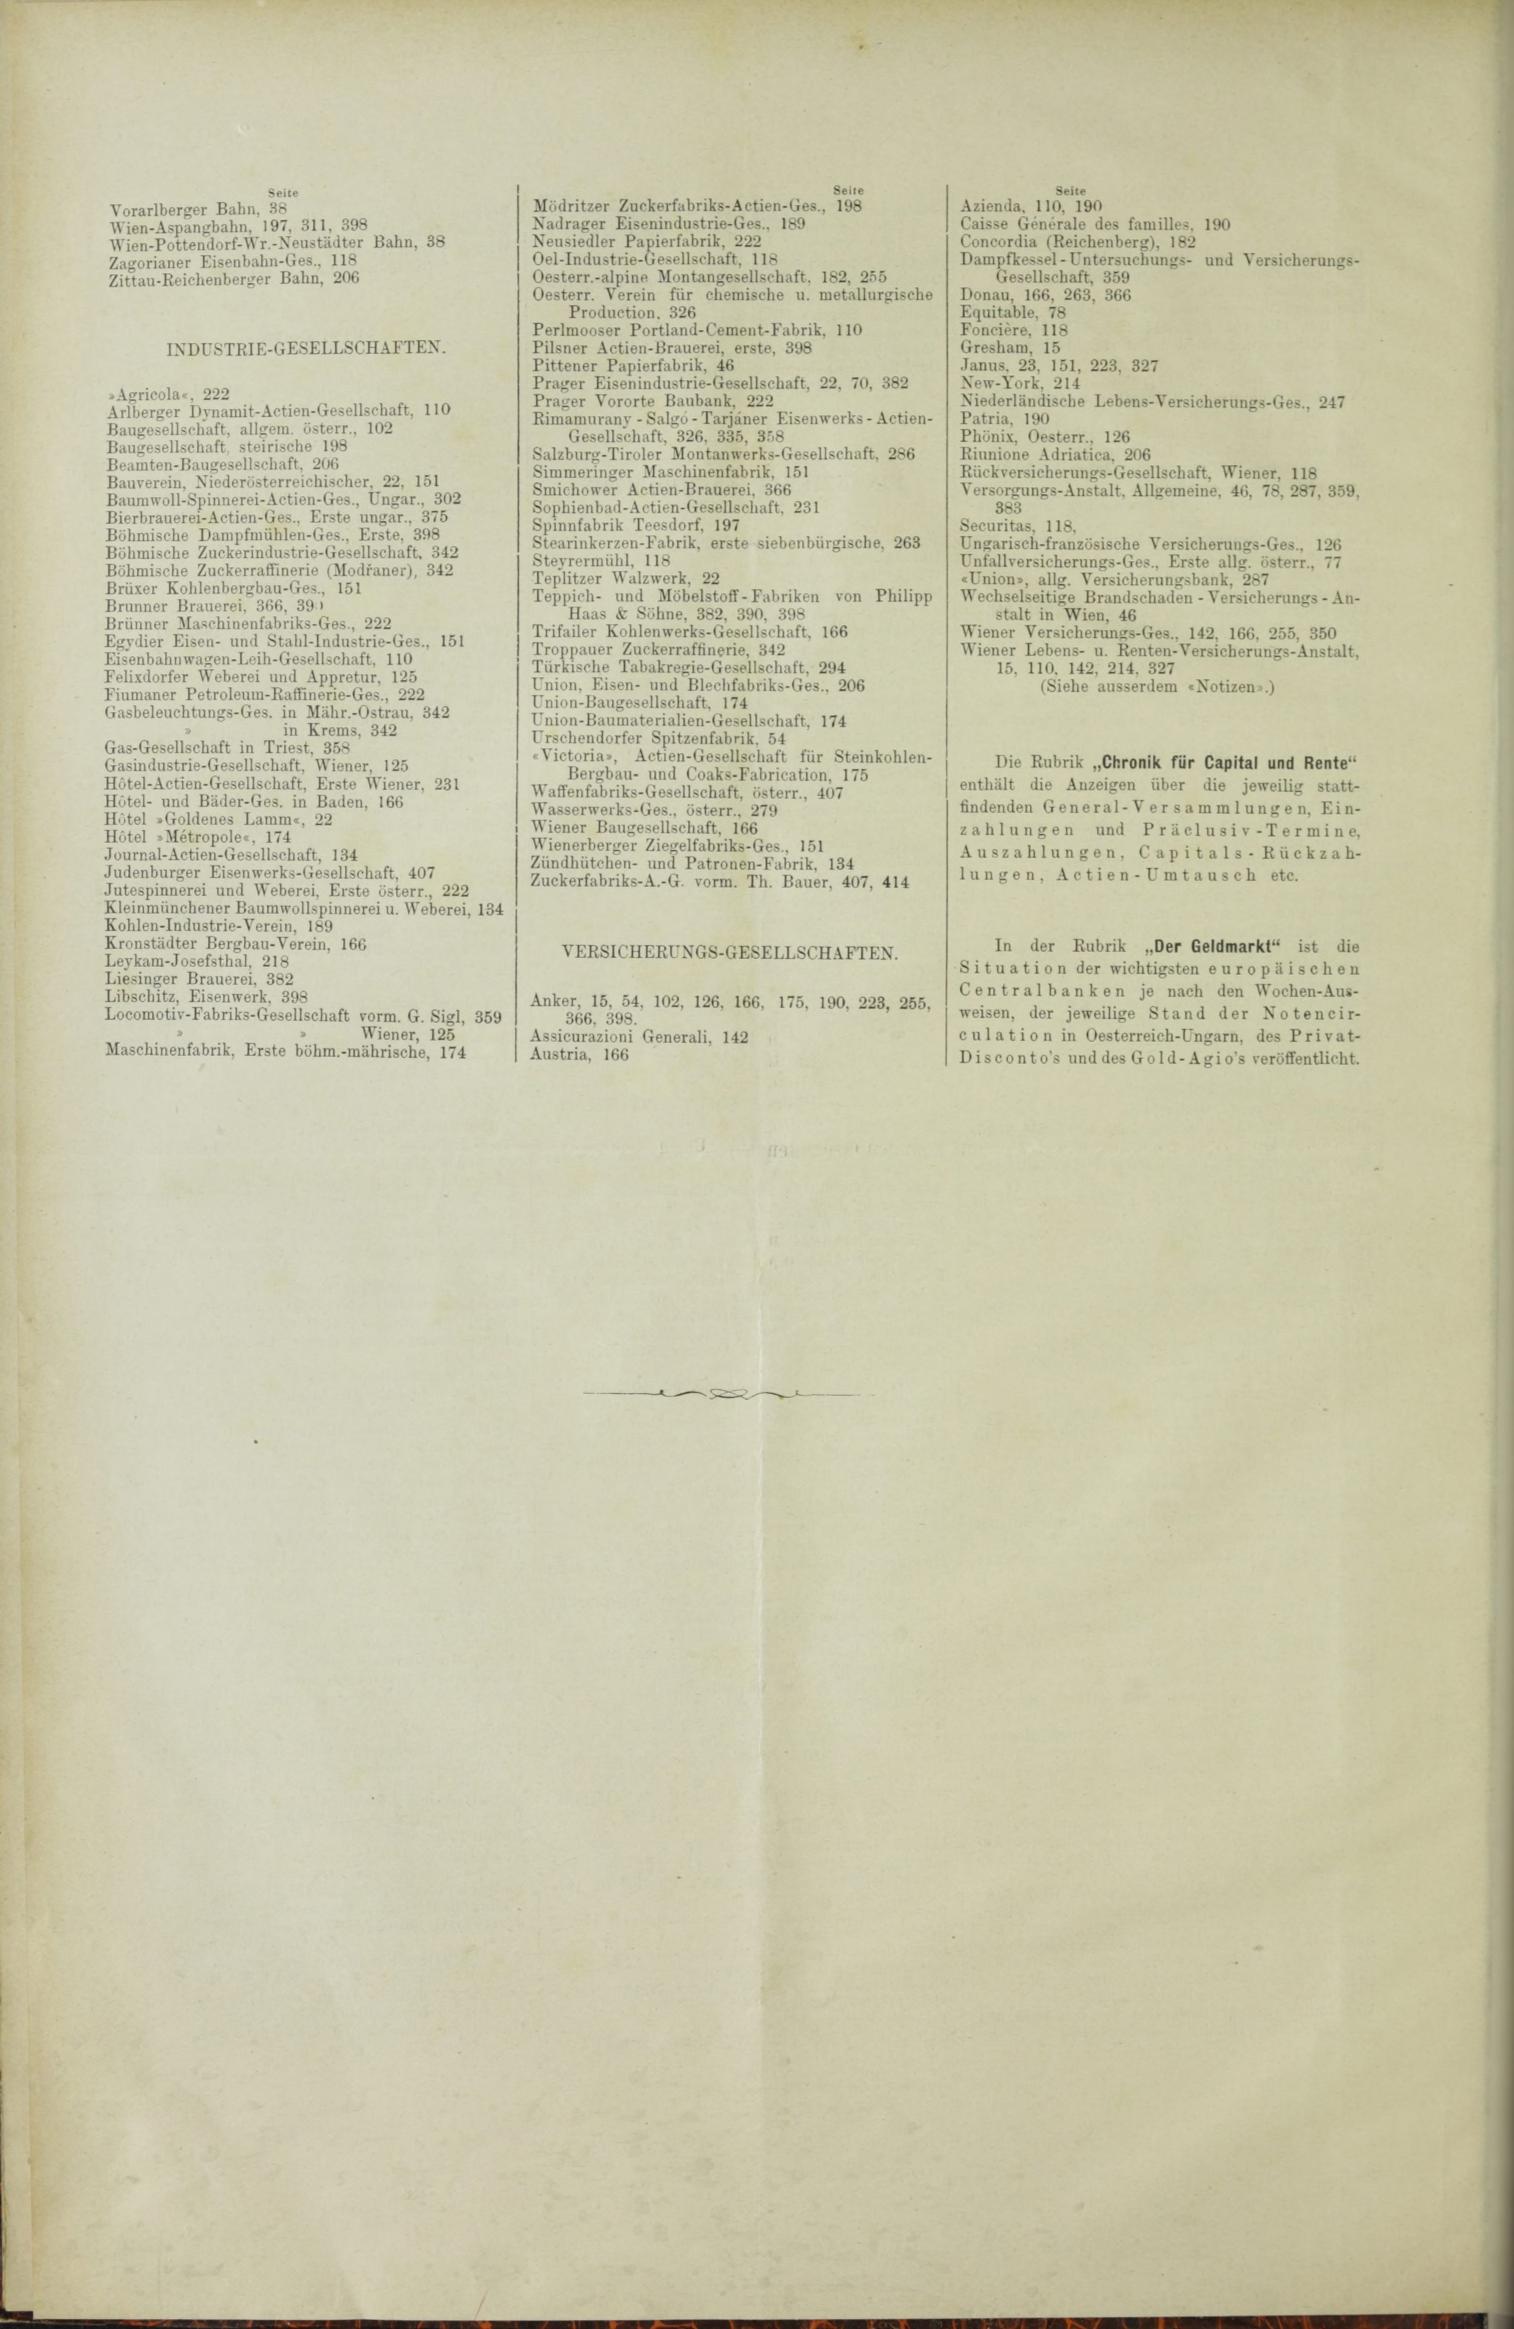 Der Tresor 08.07.1886 - Seite 12